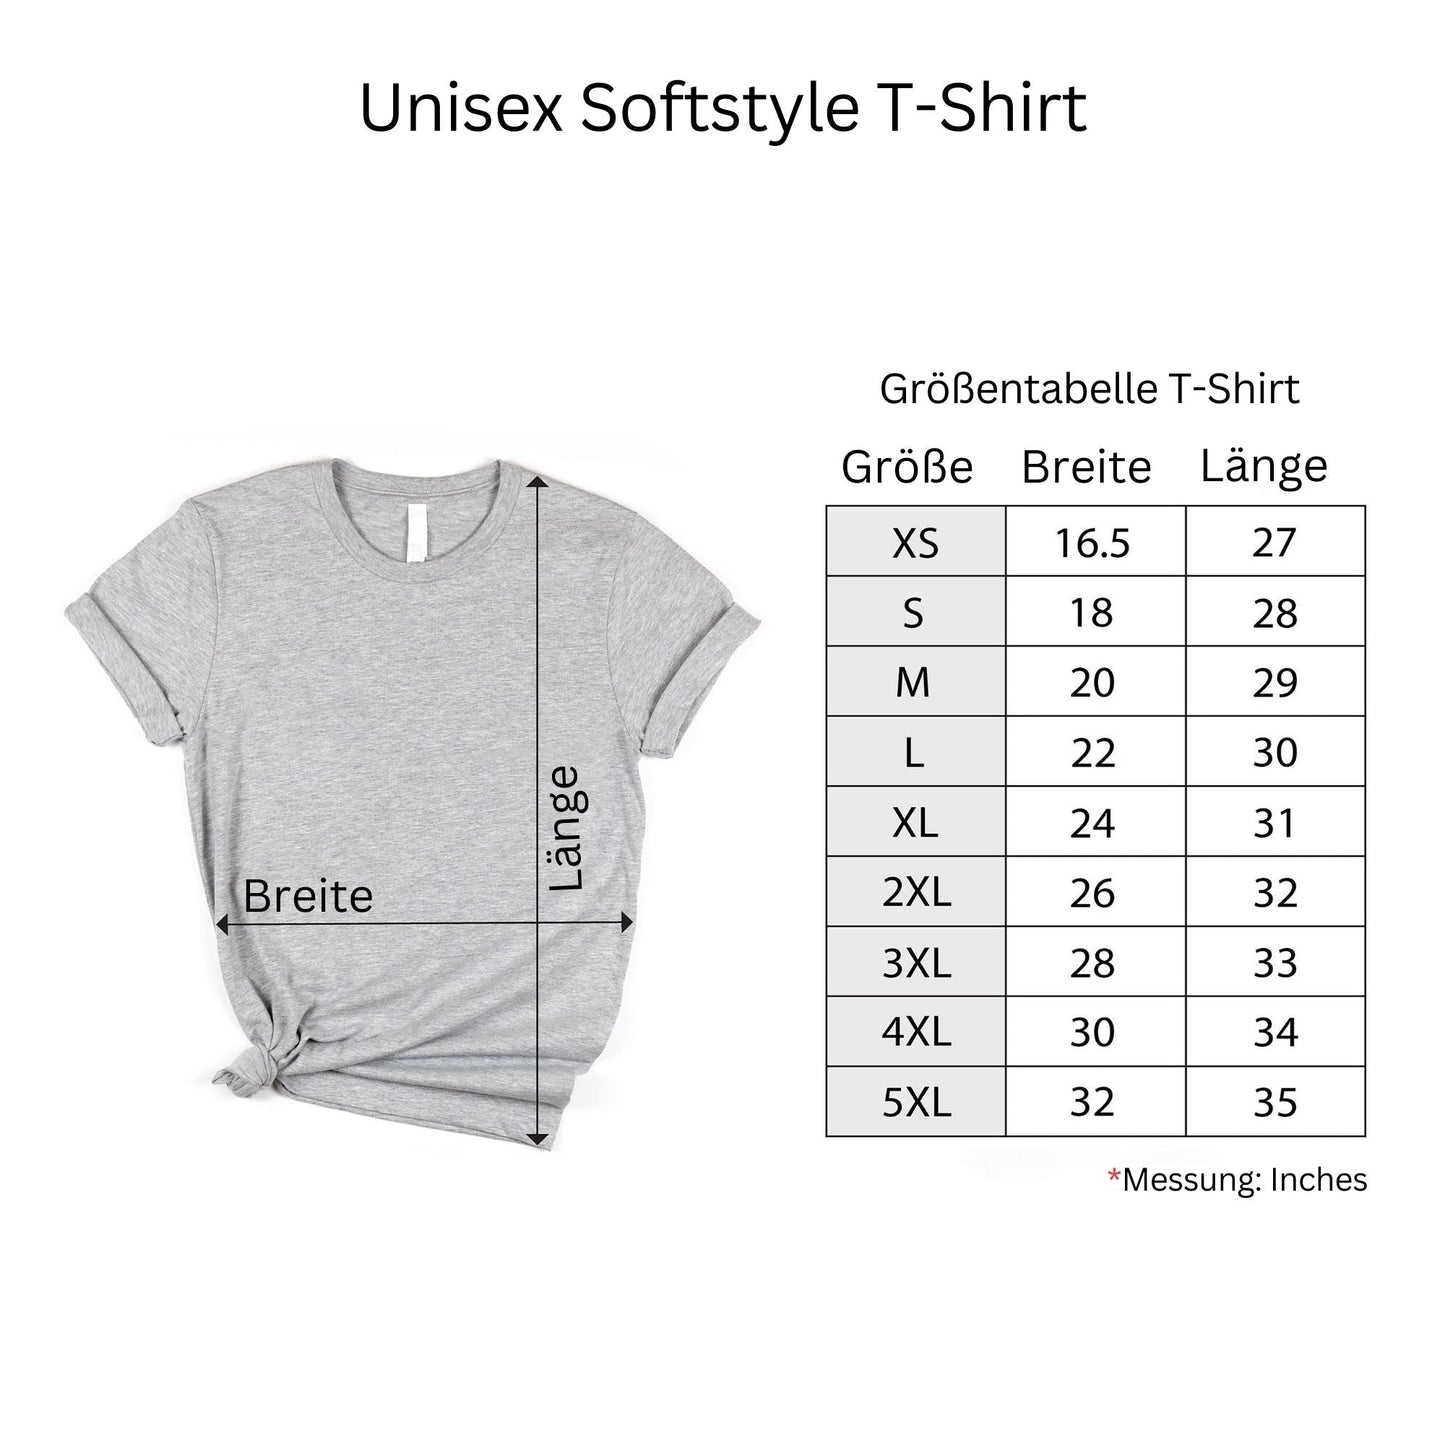 "Papa Seit - Personalisiertes Shirt mit Kindernamen" - Geschenk für neue Väter